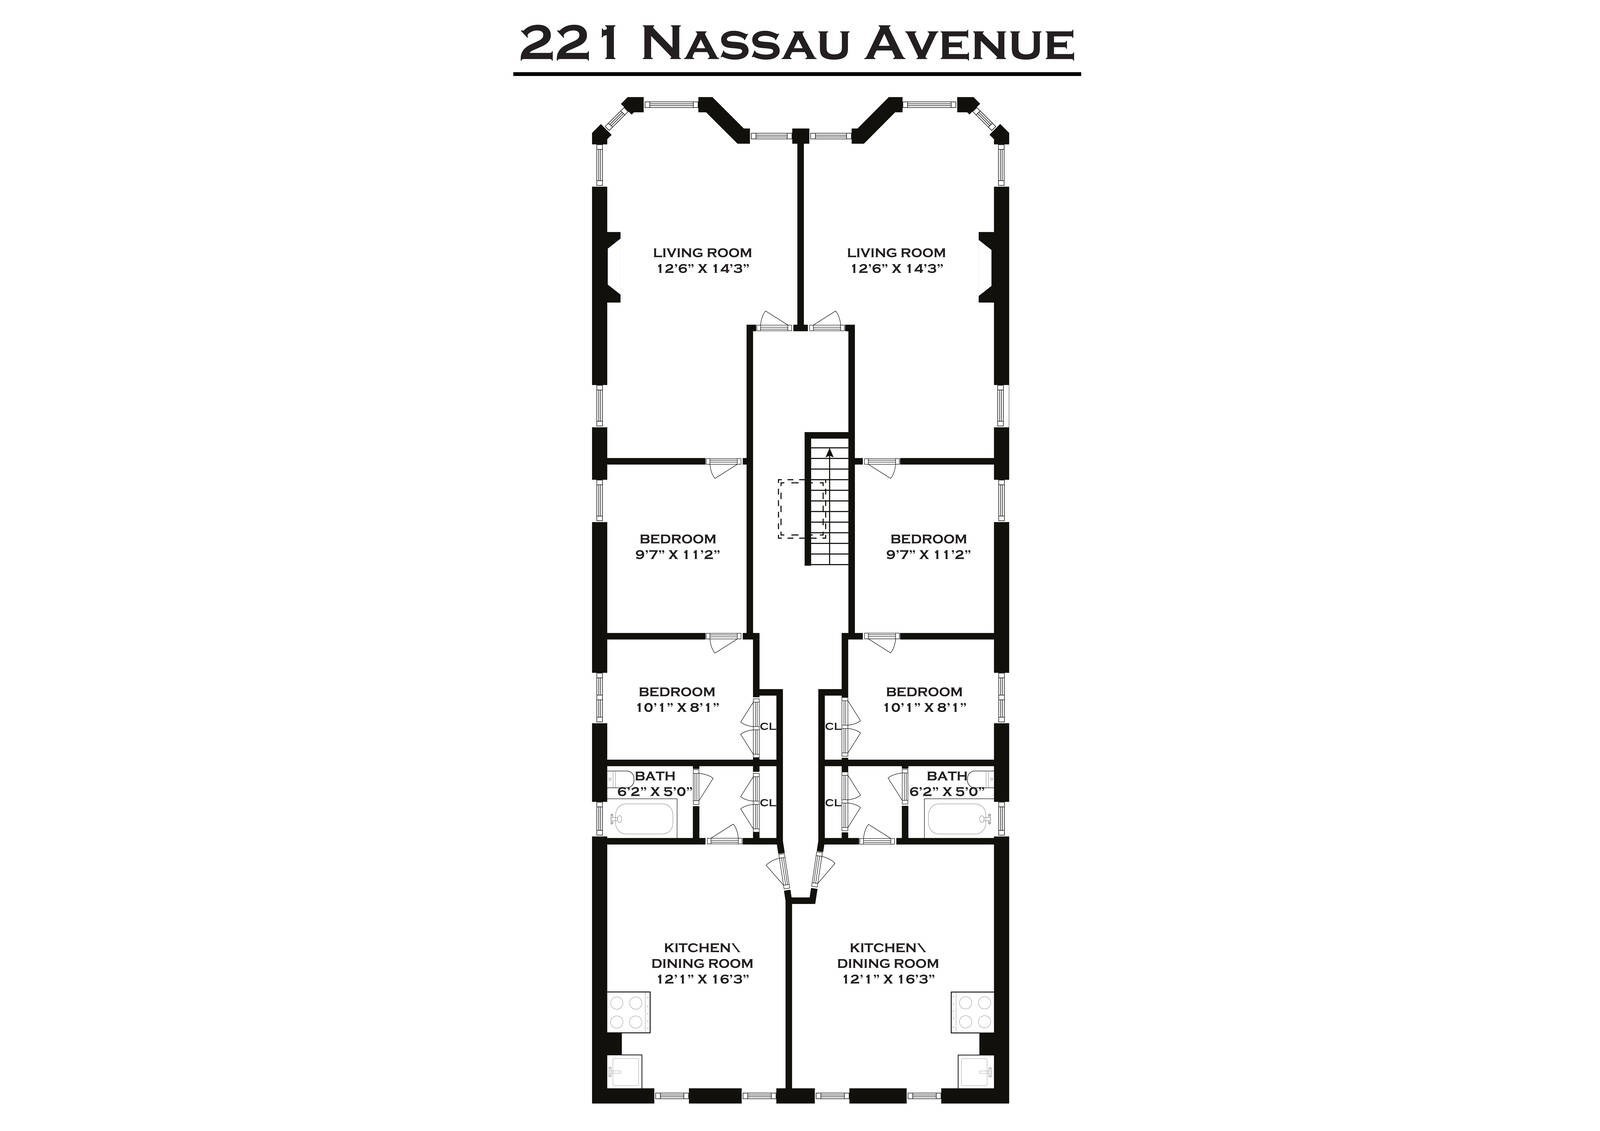 22. 221 Nassau Ave